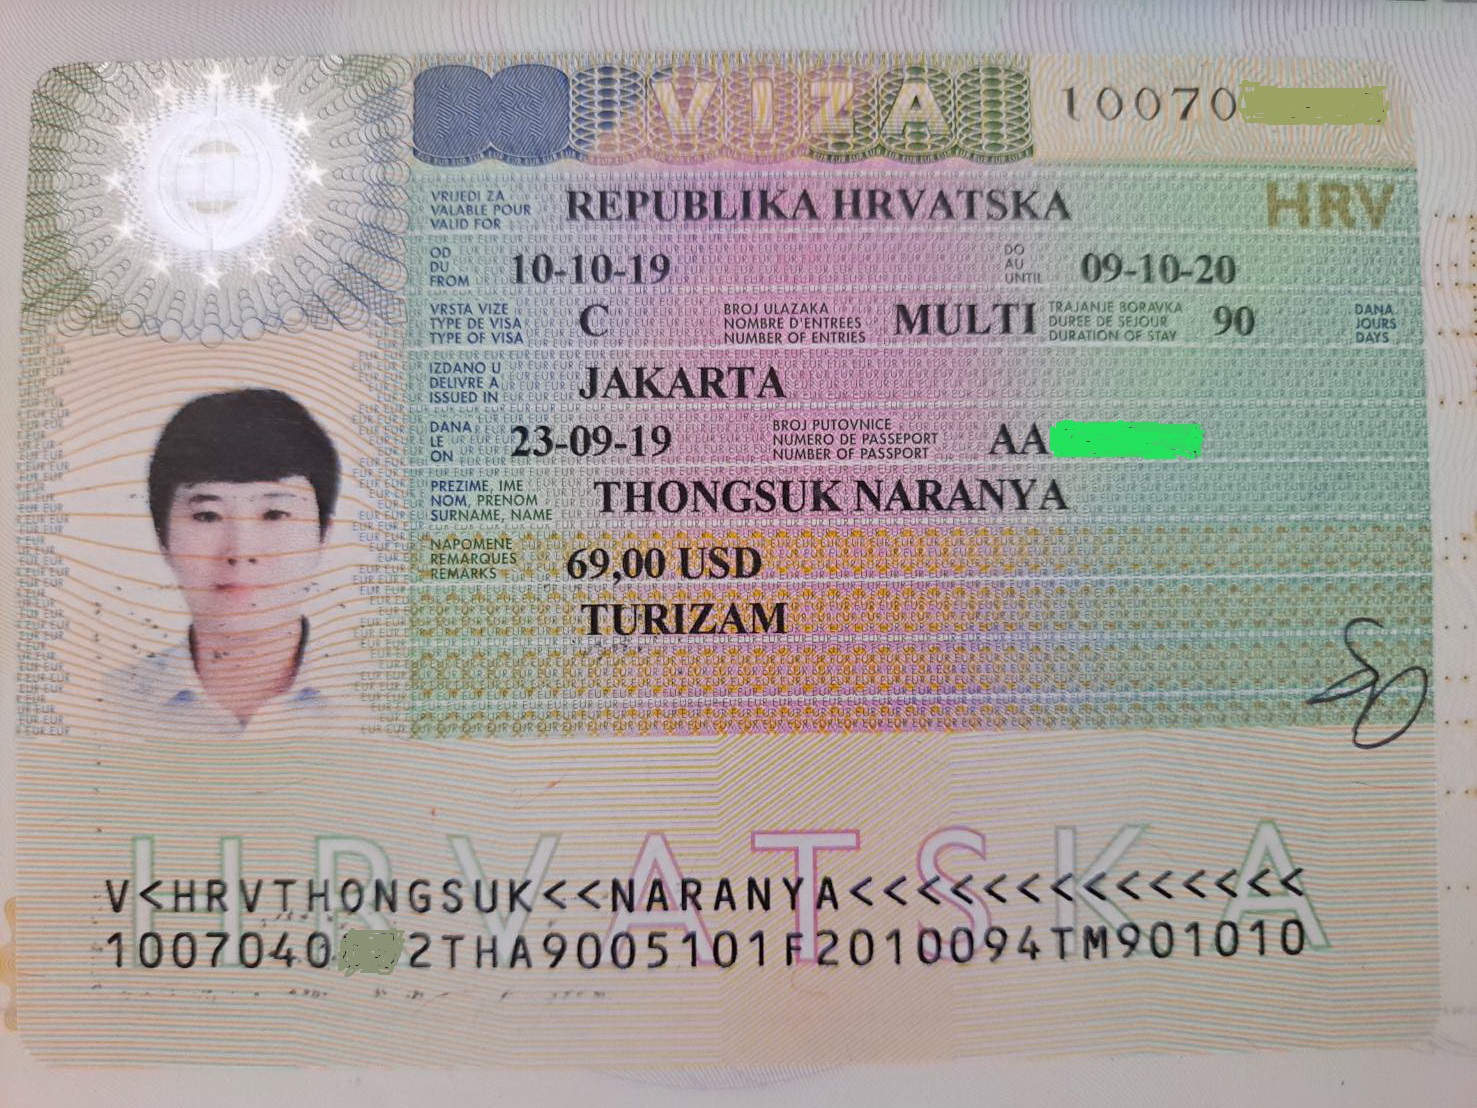 travel visa for croatia